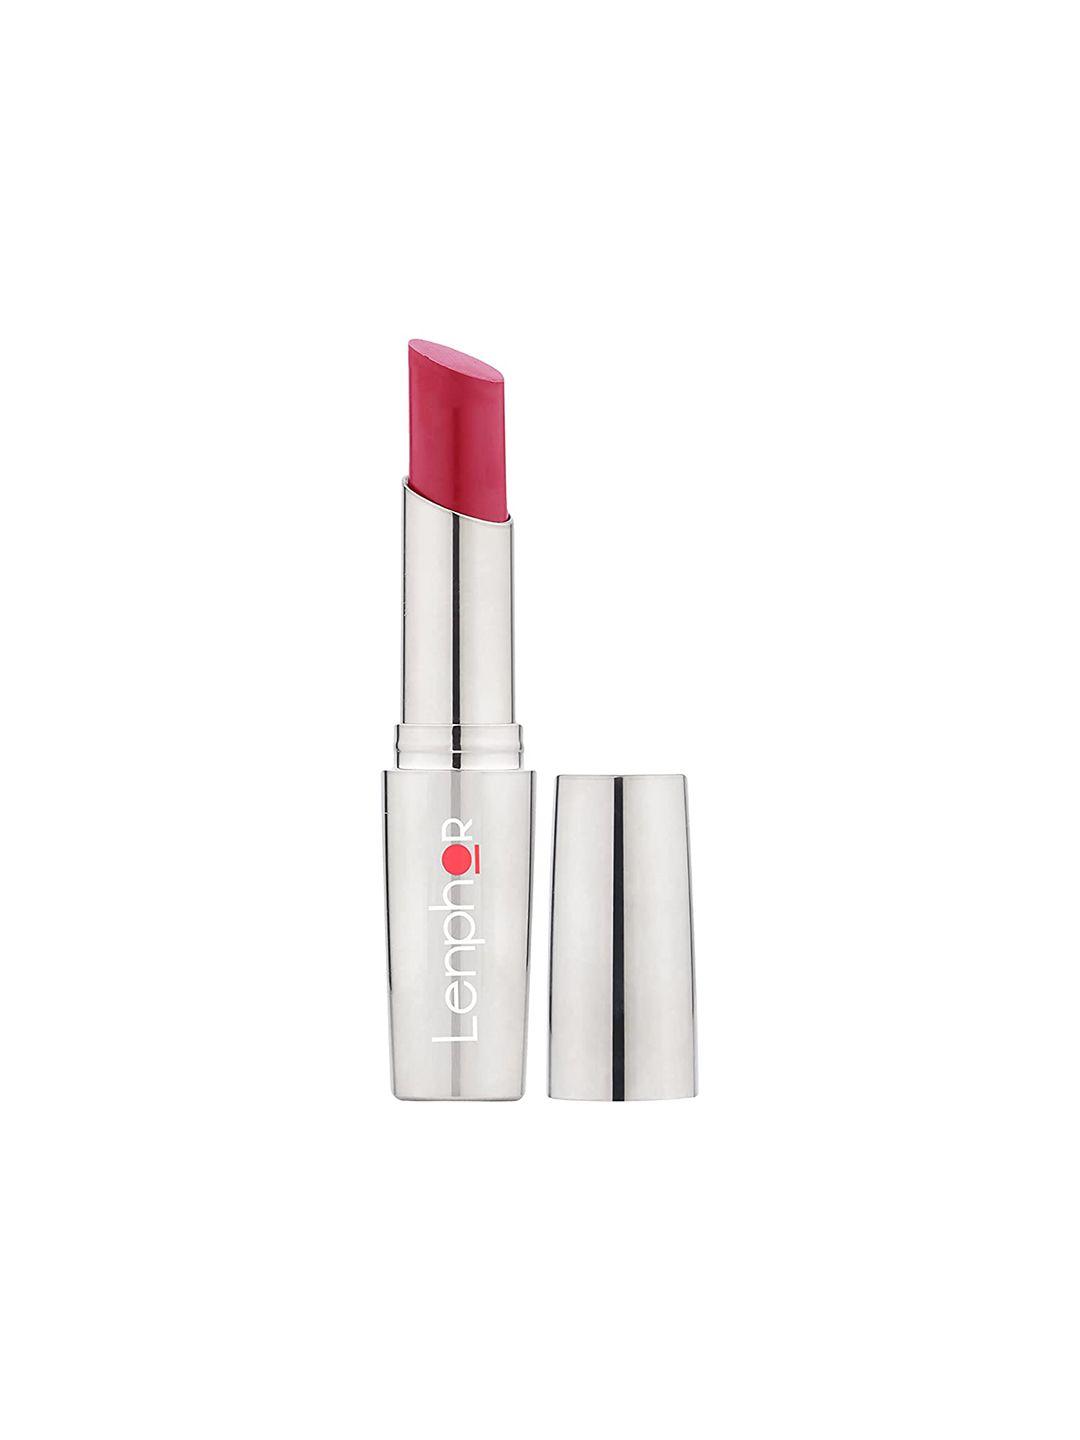 lenphor matte finish cruelty-free treasure matte lipstick with vitamin e - lure mauve 014